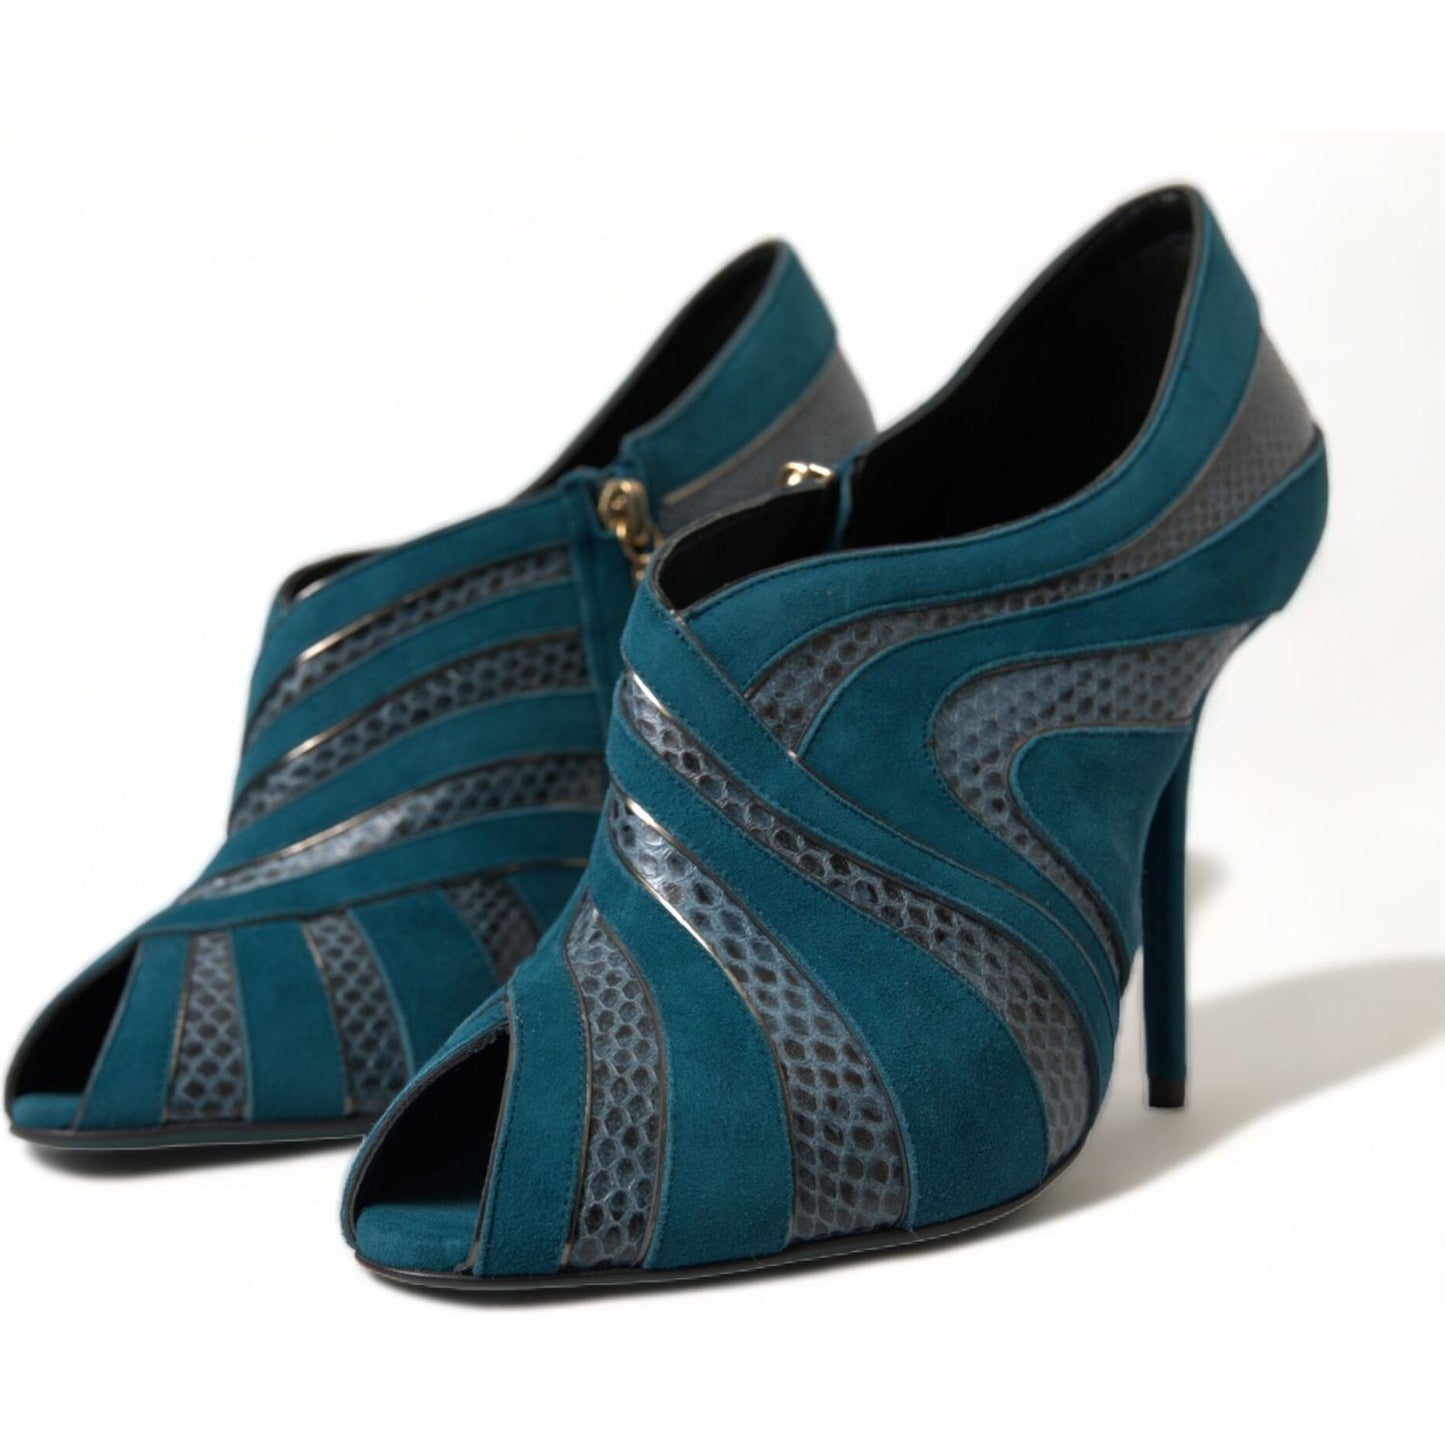 Dolce & Gabbana Teal Suede Peep Toe Heels Pumps teal-suede-leather-peep-toe-heels-pumps-shoes 465A2708-BG-scaled-8beb3ee1-3ba.jpg